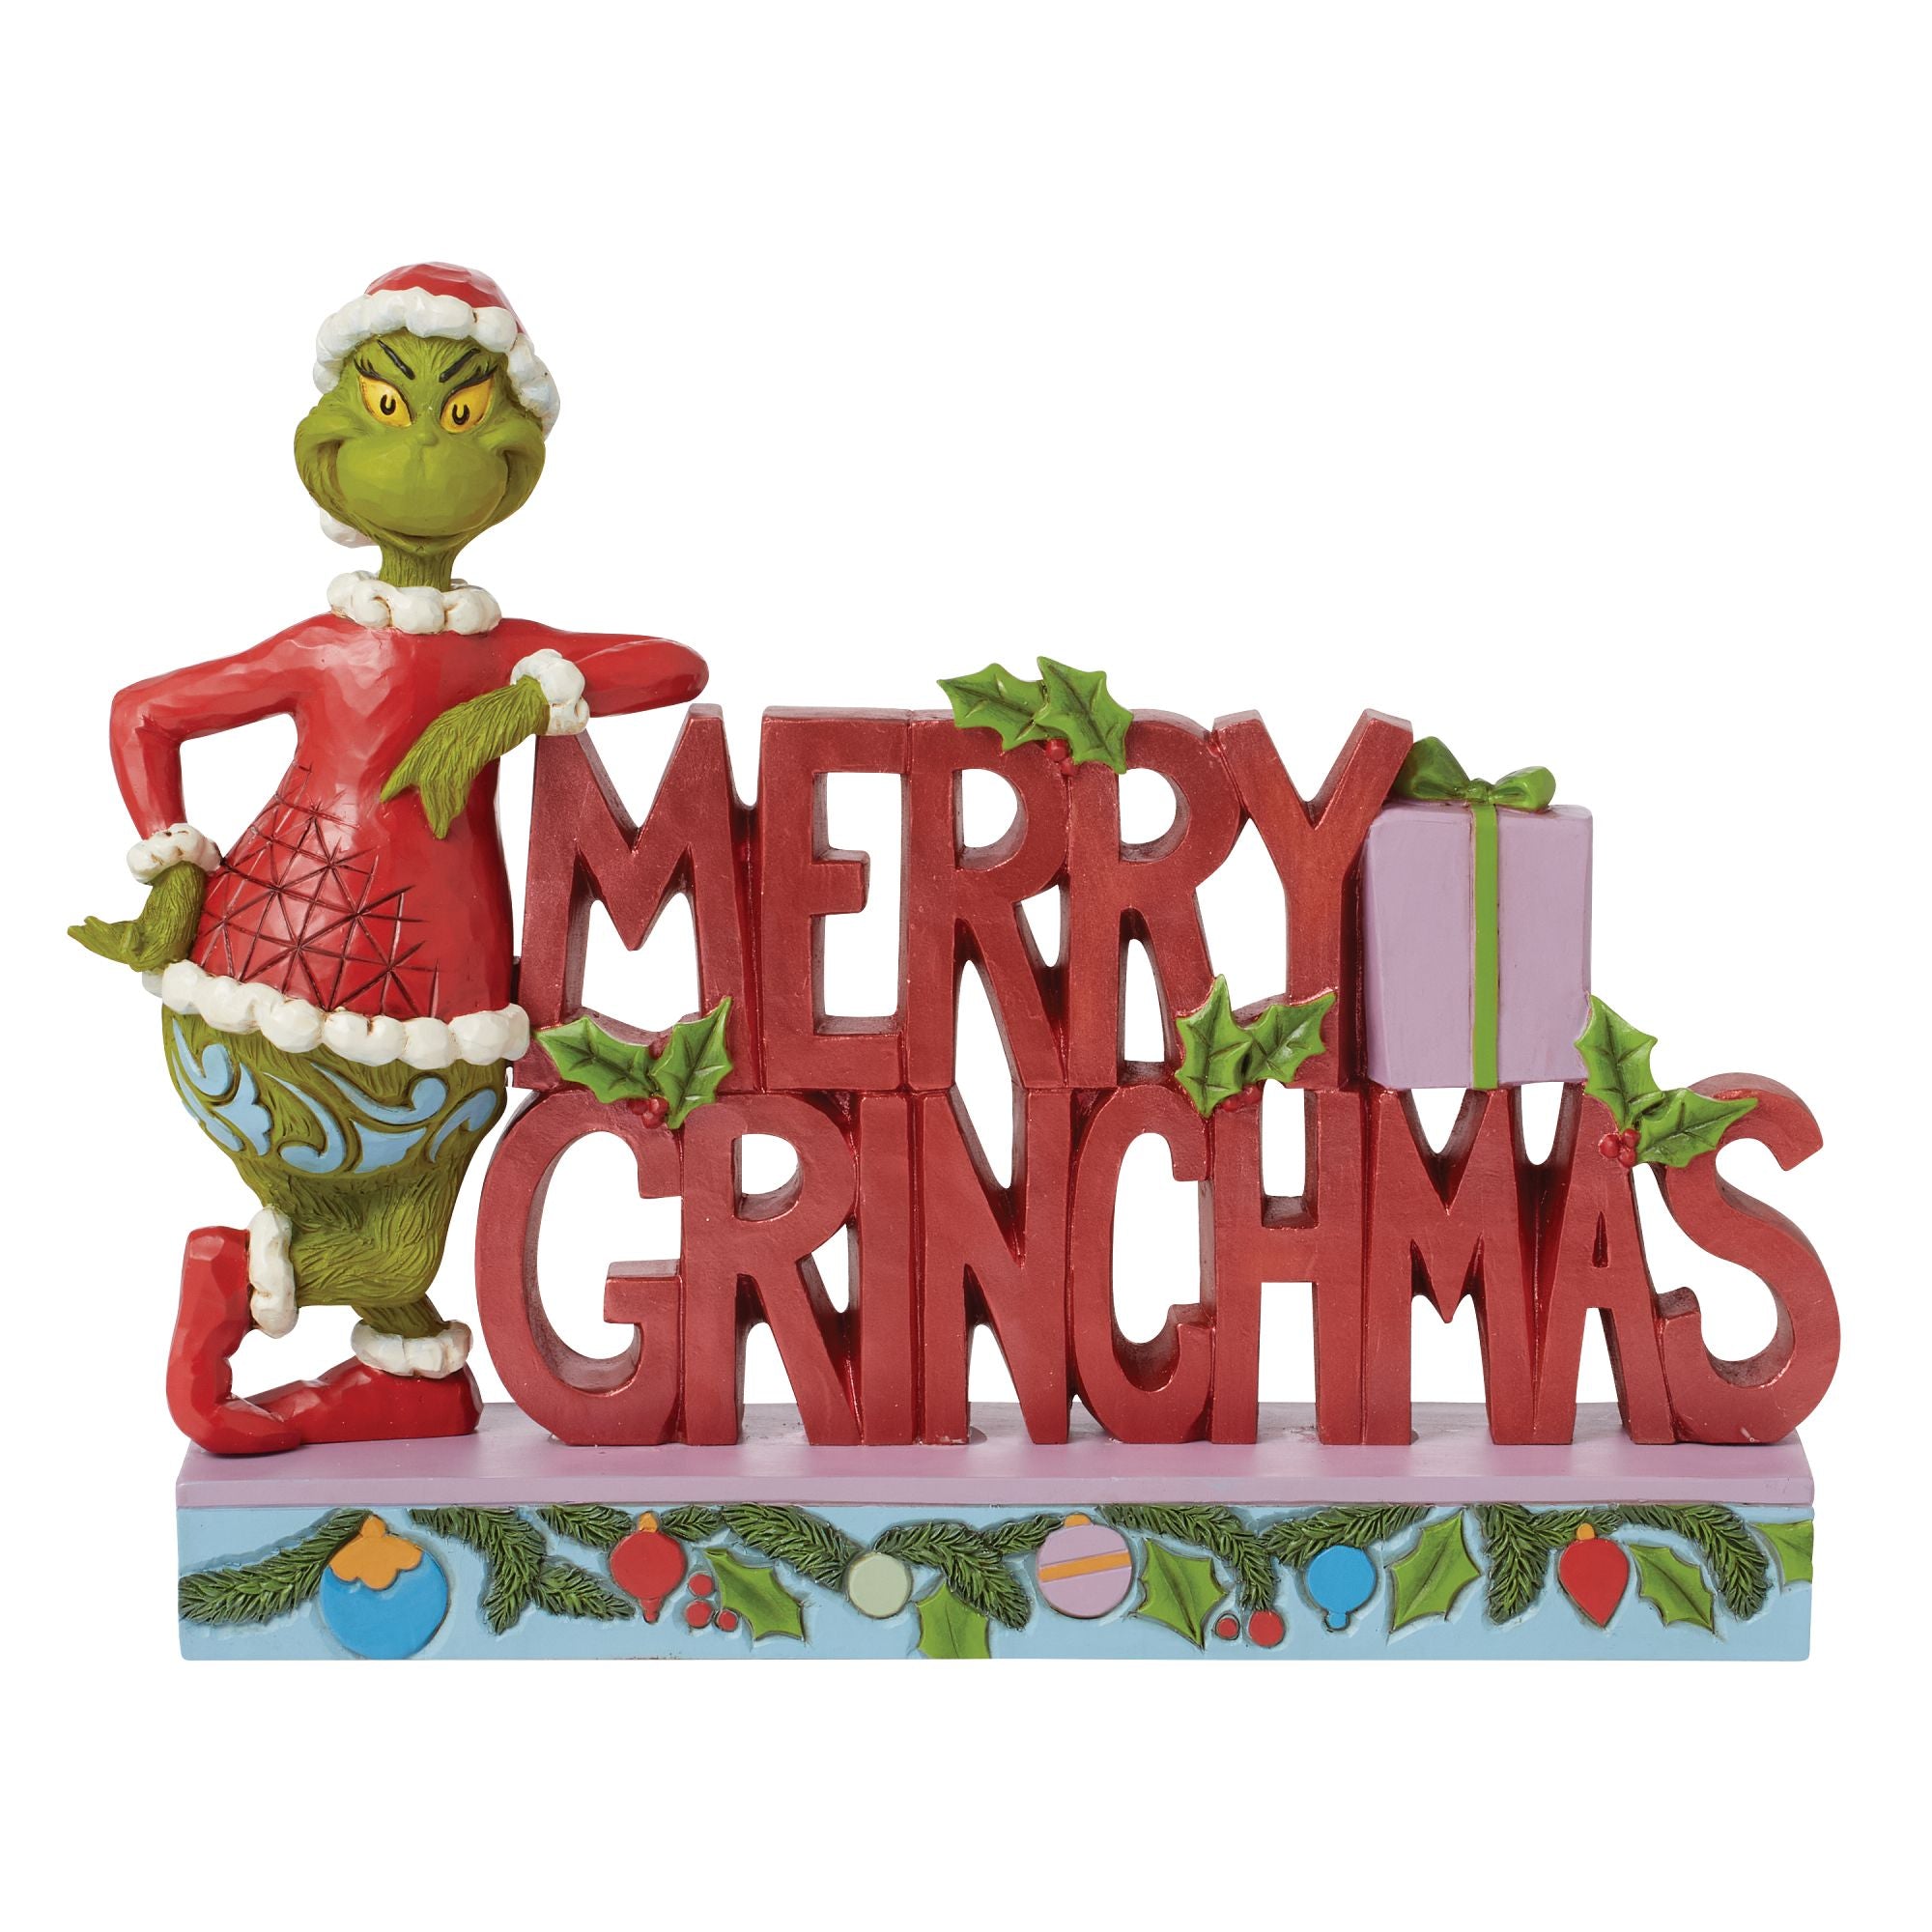 Grinch "Merry Grinchmas" Word